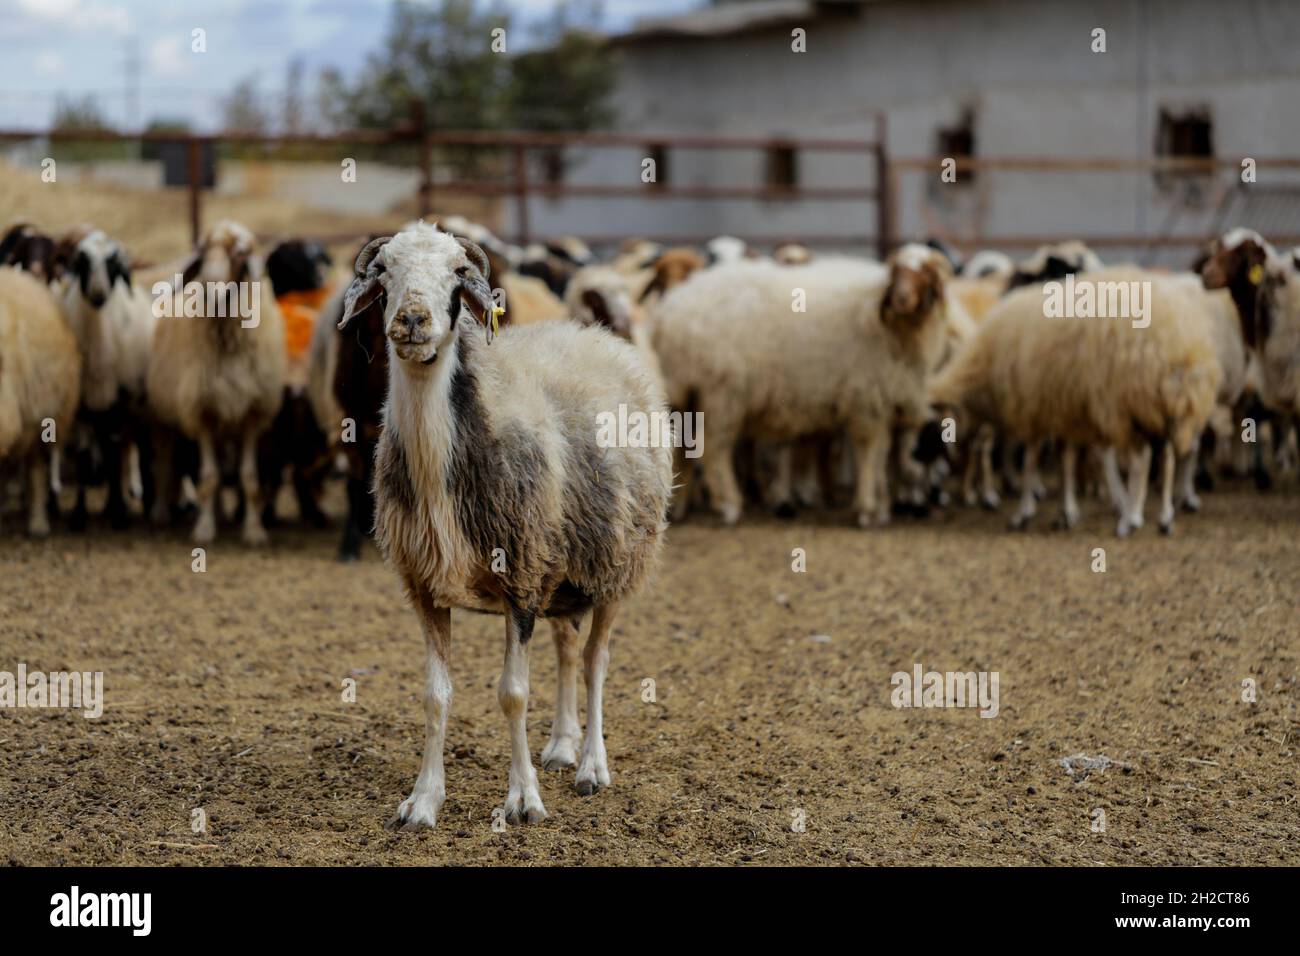 Gaziantep, Anatolie, Turquie.17 octobre 2021.Gaziantep, Turquie.19 octobre 2021.Moutons dans les « grandes fermes » dans la ville de Gaziantep, dans le sud de la Turquie.La ferme reproduit des chèvres, des moutons et des poulets, et produit un grand nombre d'oeufs à aire libre.La ferme, qui cultive également des champignons et produit des fourrages pour animaux, s'engage à protéger l'environnement et à assurer la durabilité.L'entreprise est un exemple d'intégration réussie des Syriens qui s'installent en Turquie après avoir fui le conflit dans leur pays d'origine (Credit image: © Mohammad ATA/IMAGESLIVE via ZUMA Press Wire) Banque D'Images